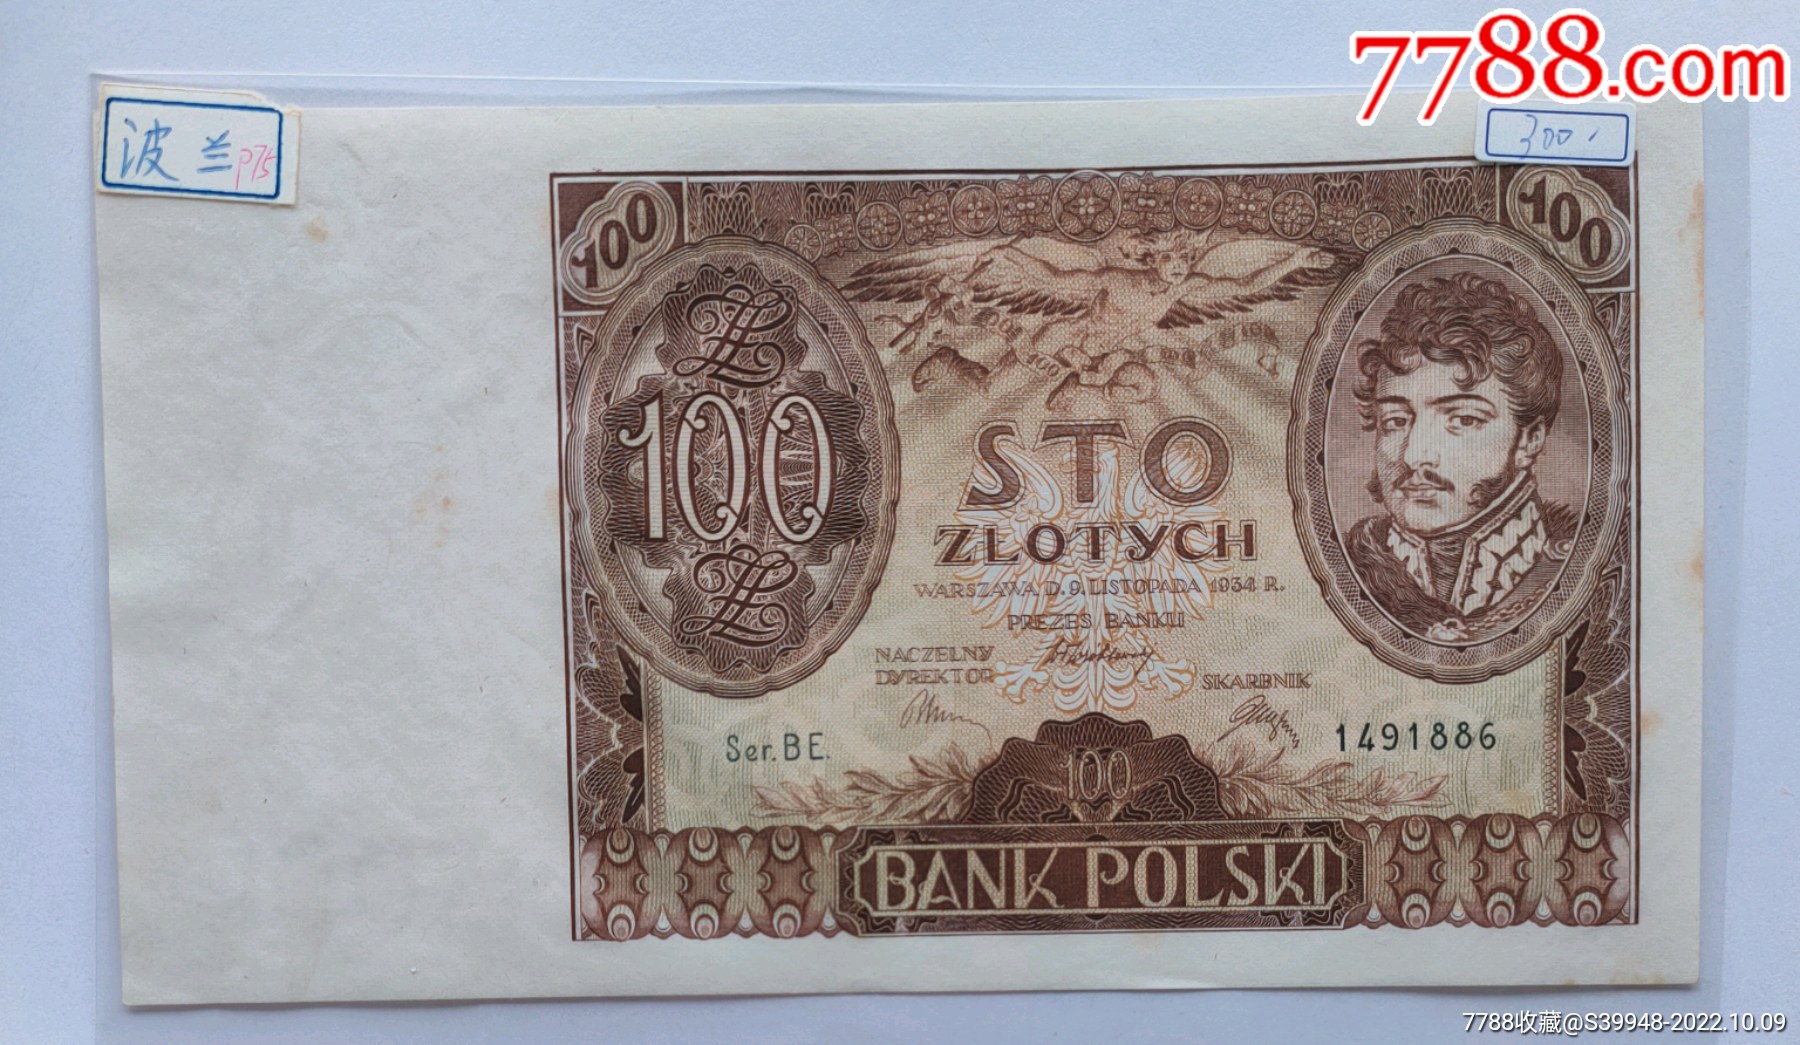 波兰货币钞票 库存照片. 图片 包括有 特写镜头, 班卓琵琶, 替换, 市场, 负债, 绿色, 广告牌, 投资 - 27002078